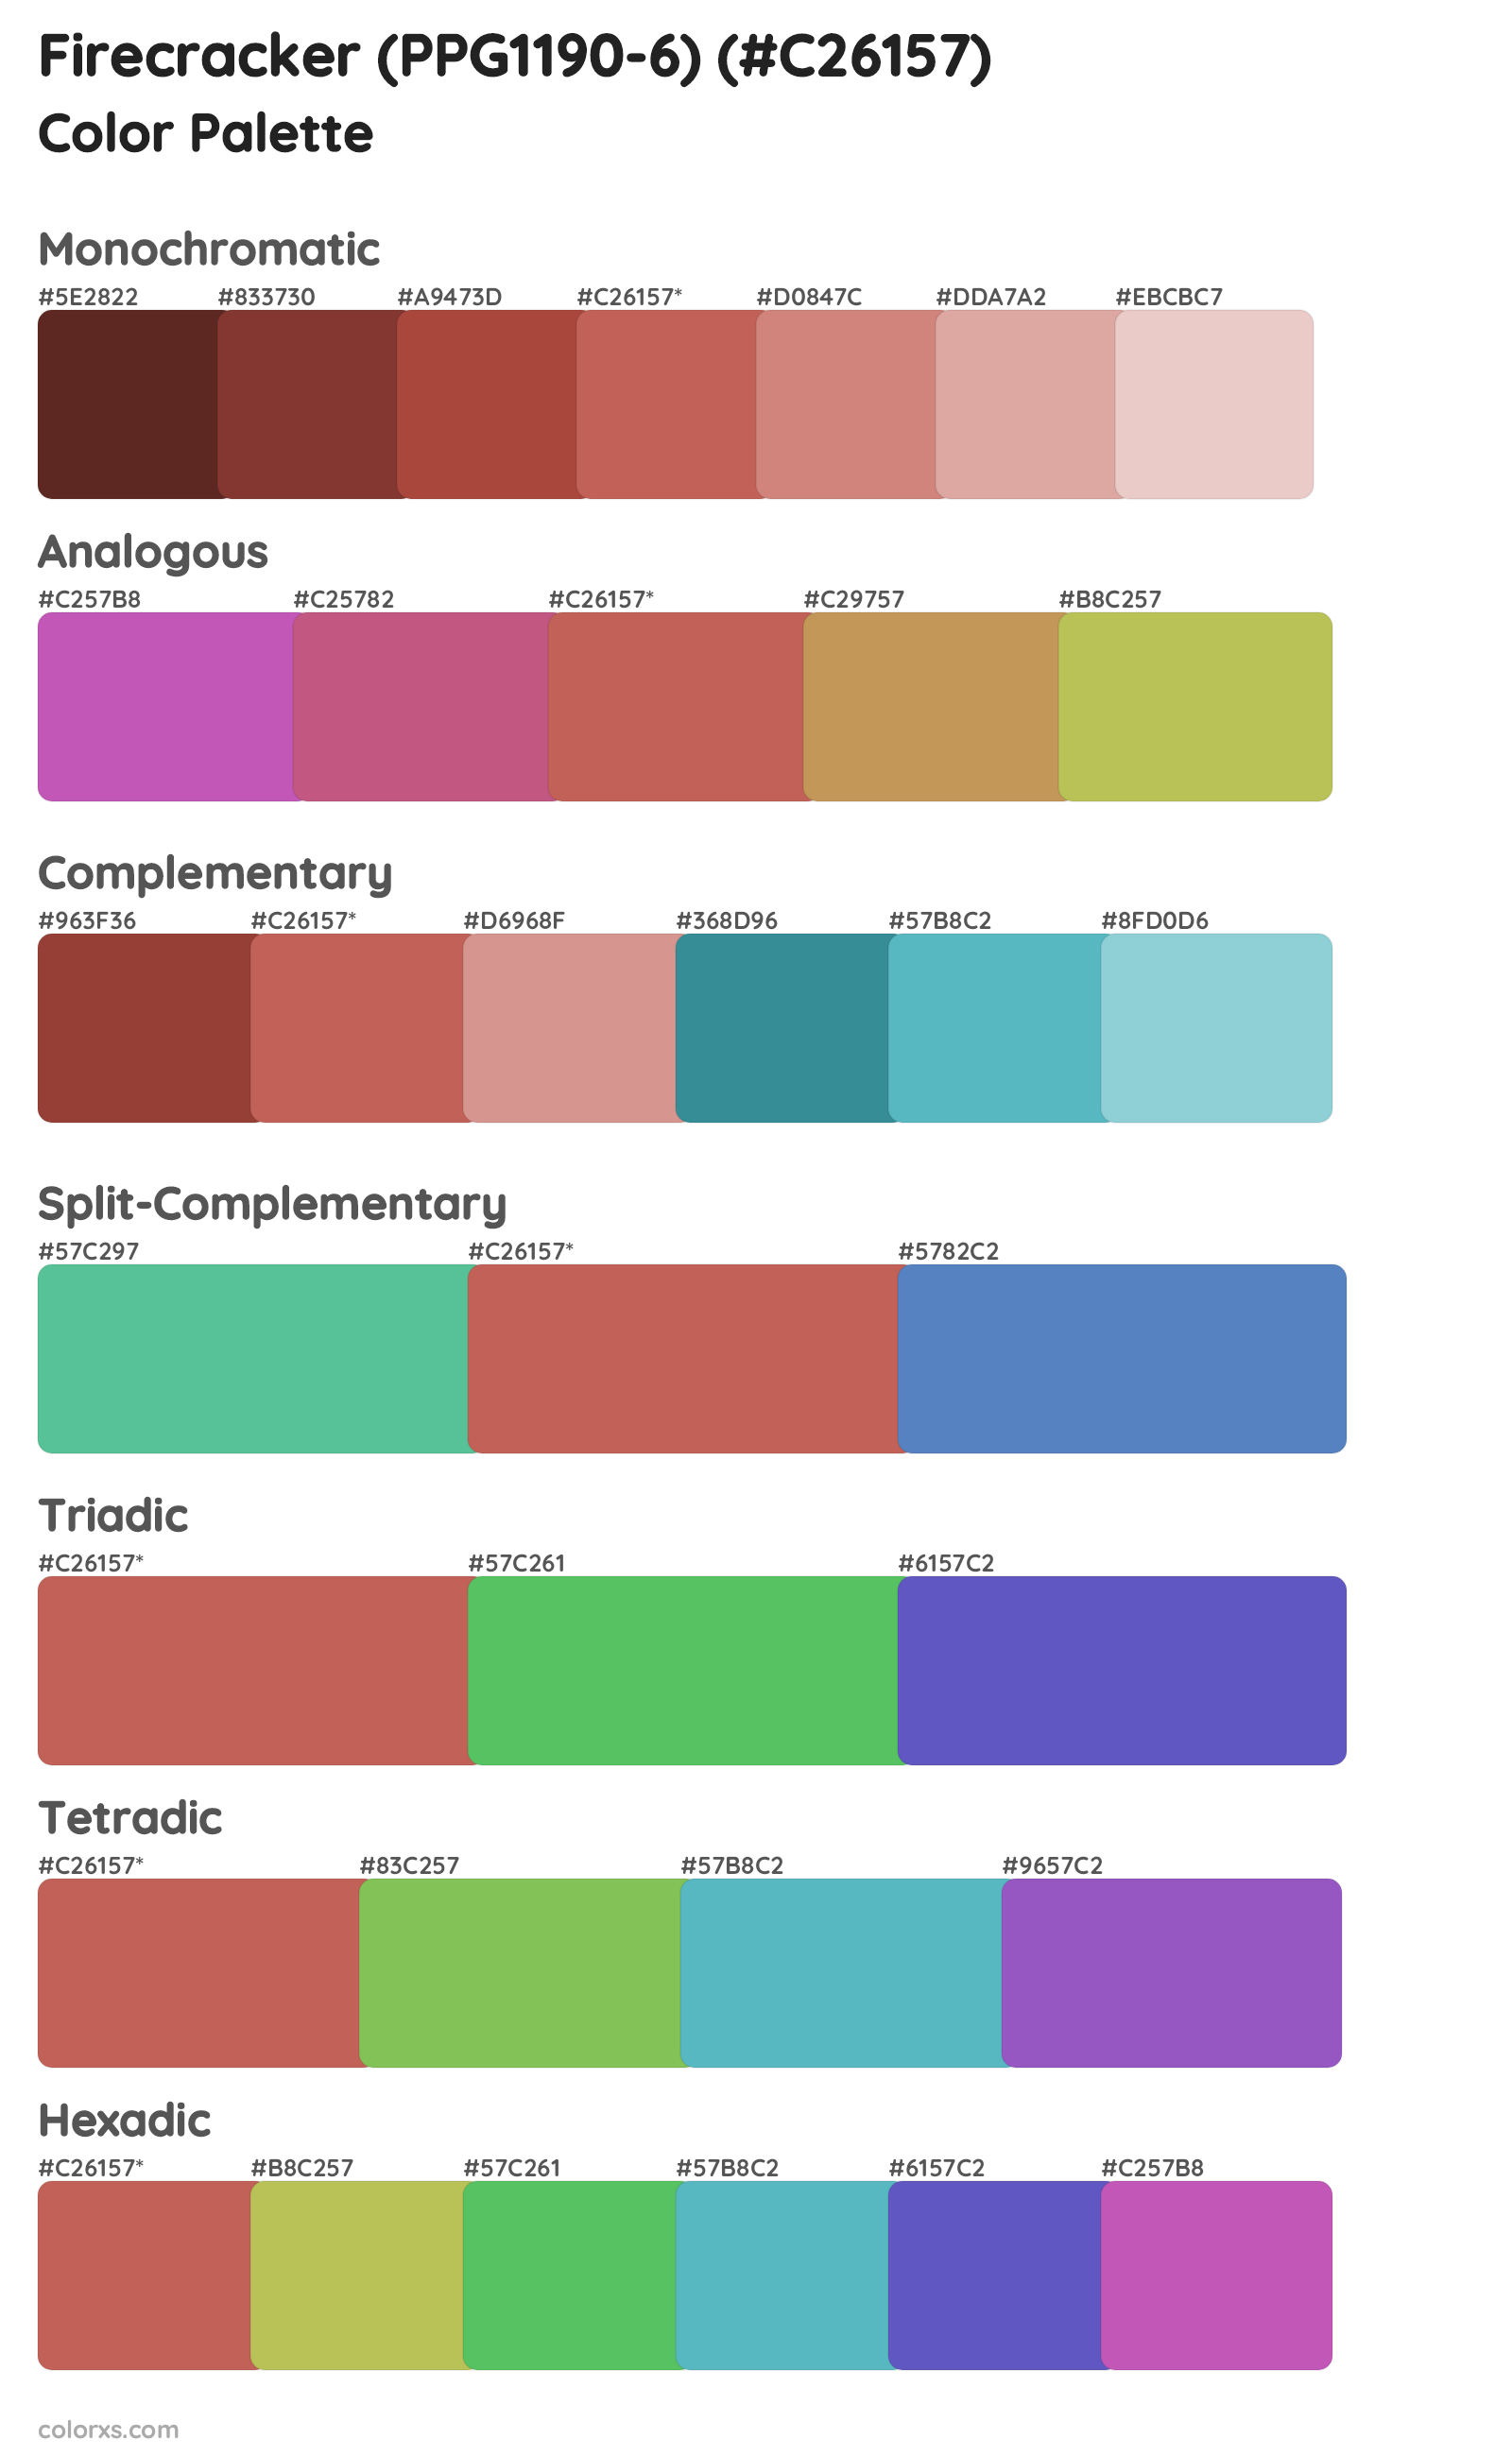 Firecracker (PPG1190-6) Color Scheme Palettes